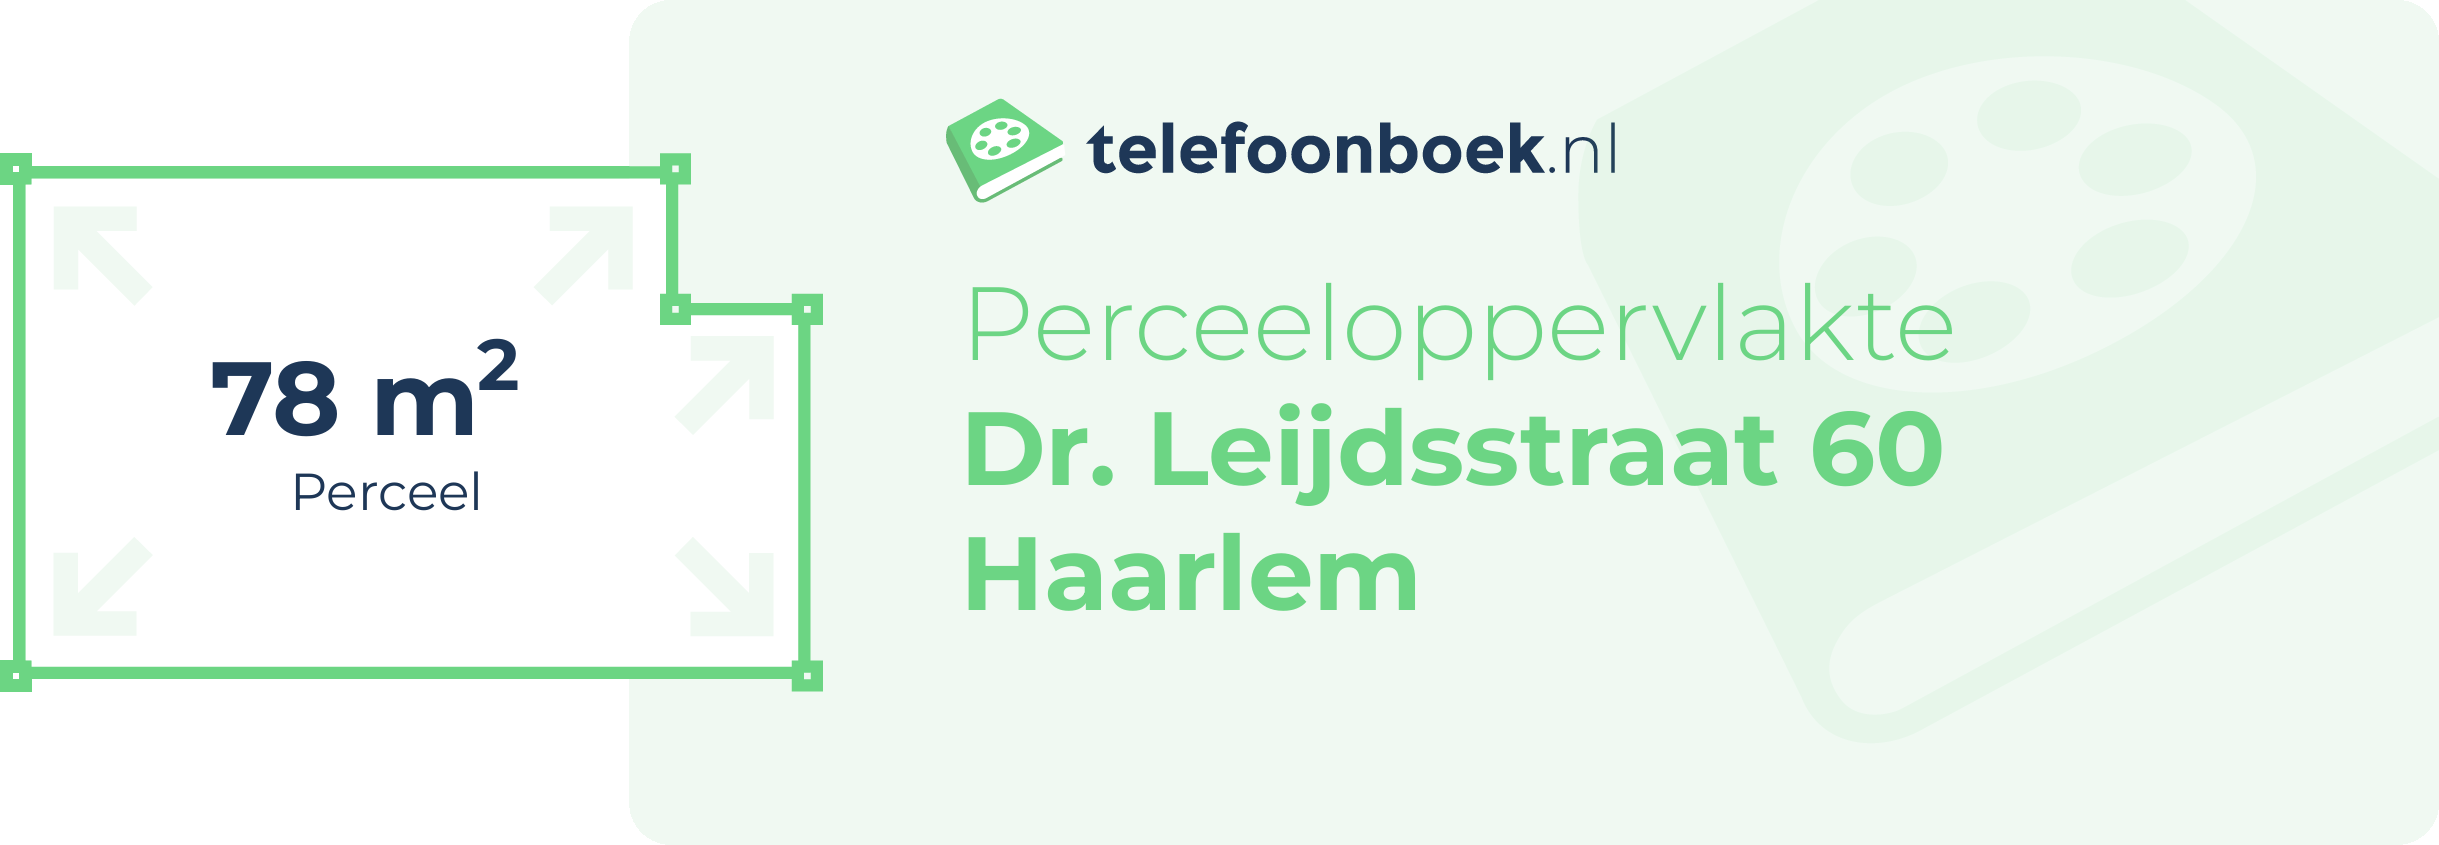 Perceeloppervlakte Dr. Leijdsstraat 60 Haarlem